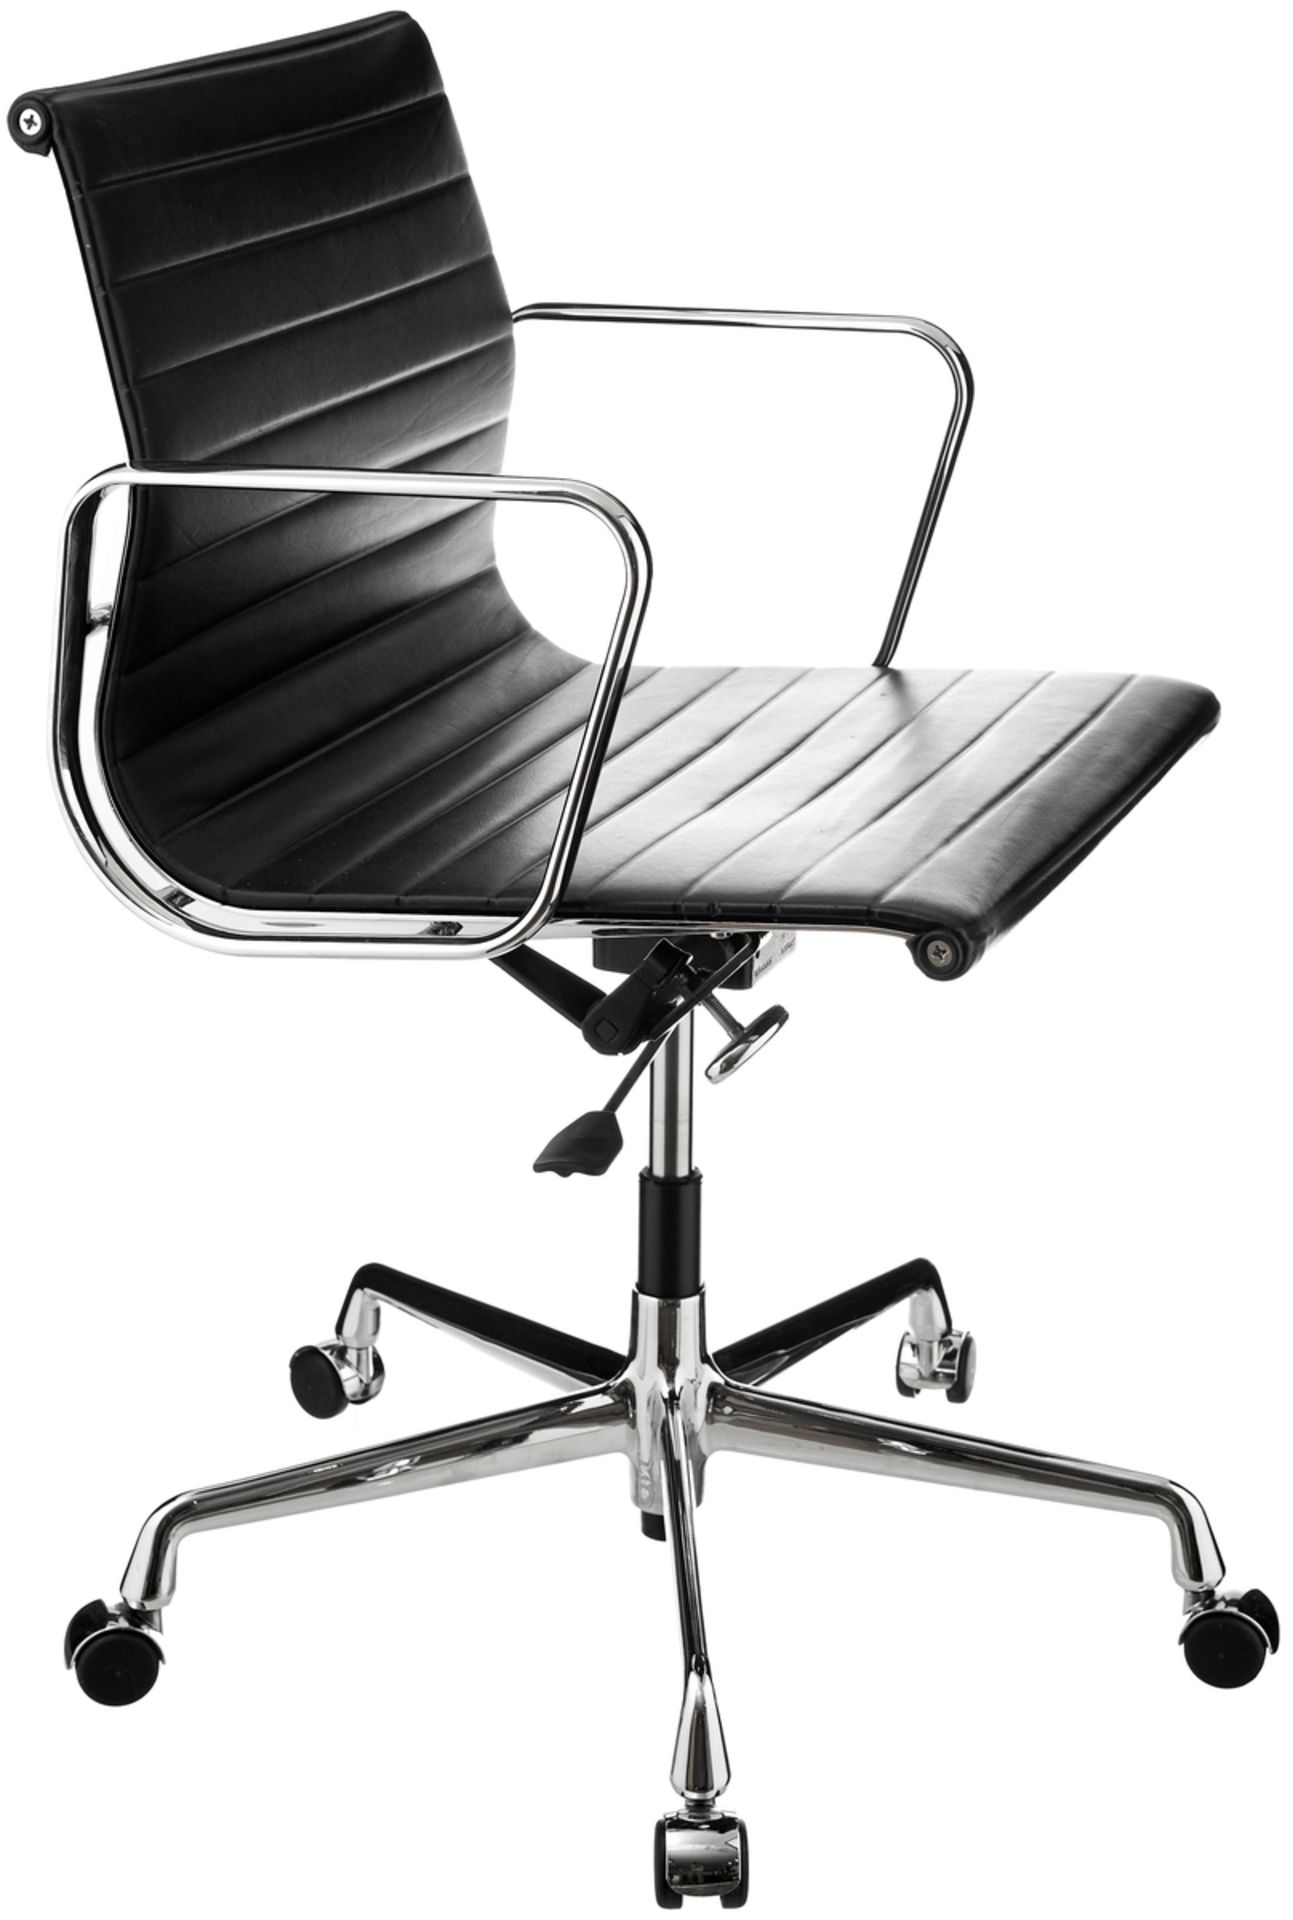 Paar Bürostühle "EA117"Entwurf 1958 Charles & Ray Eames für Herman Miller. Drehbares, poliertes - Bild 2 aus 5